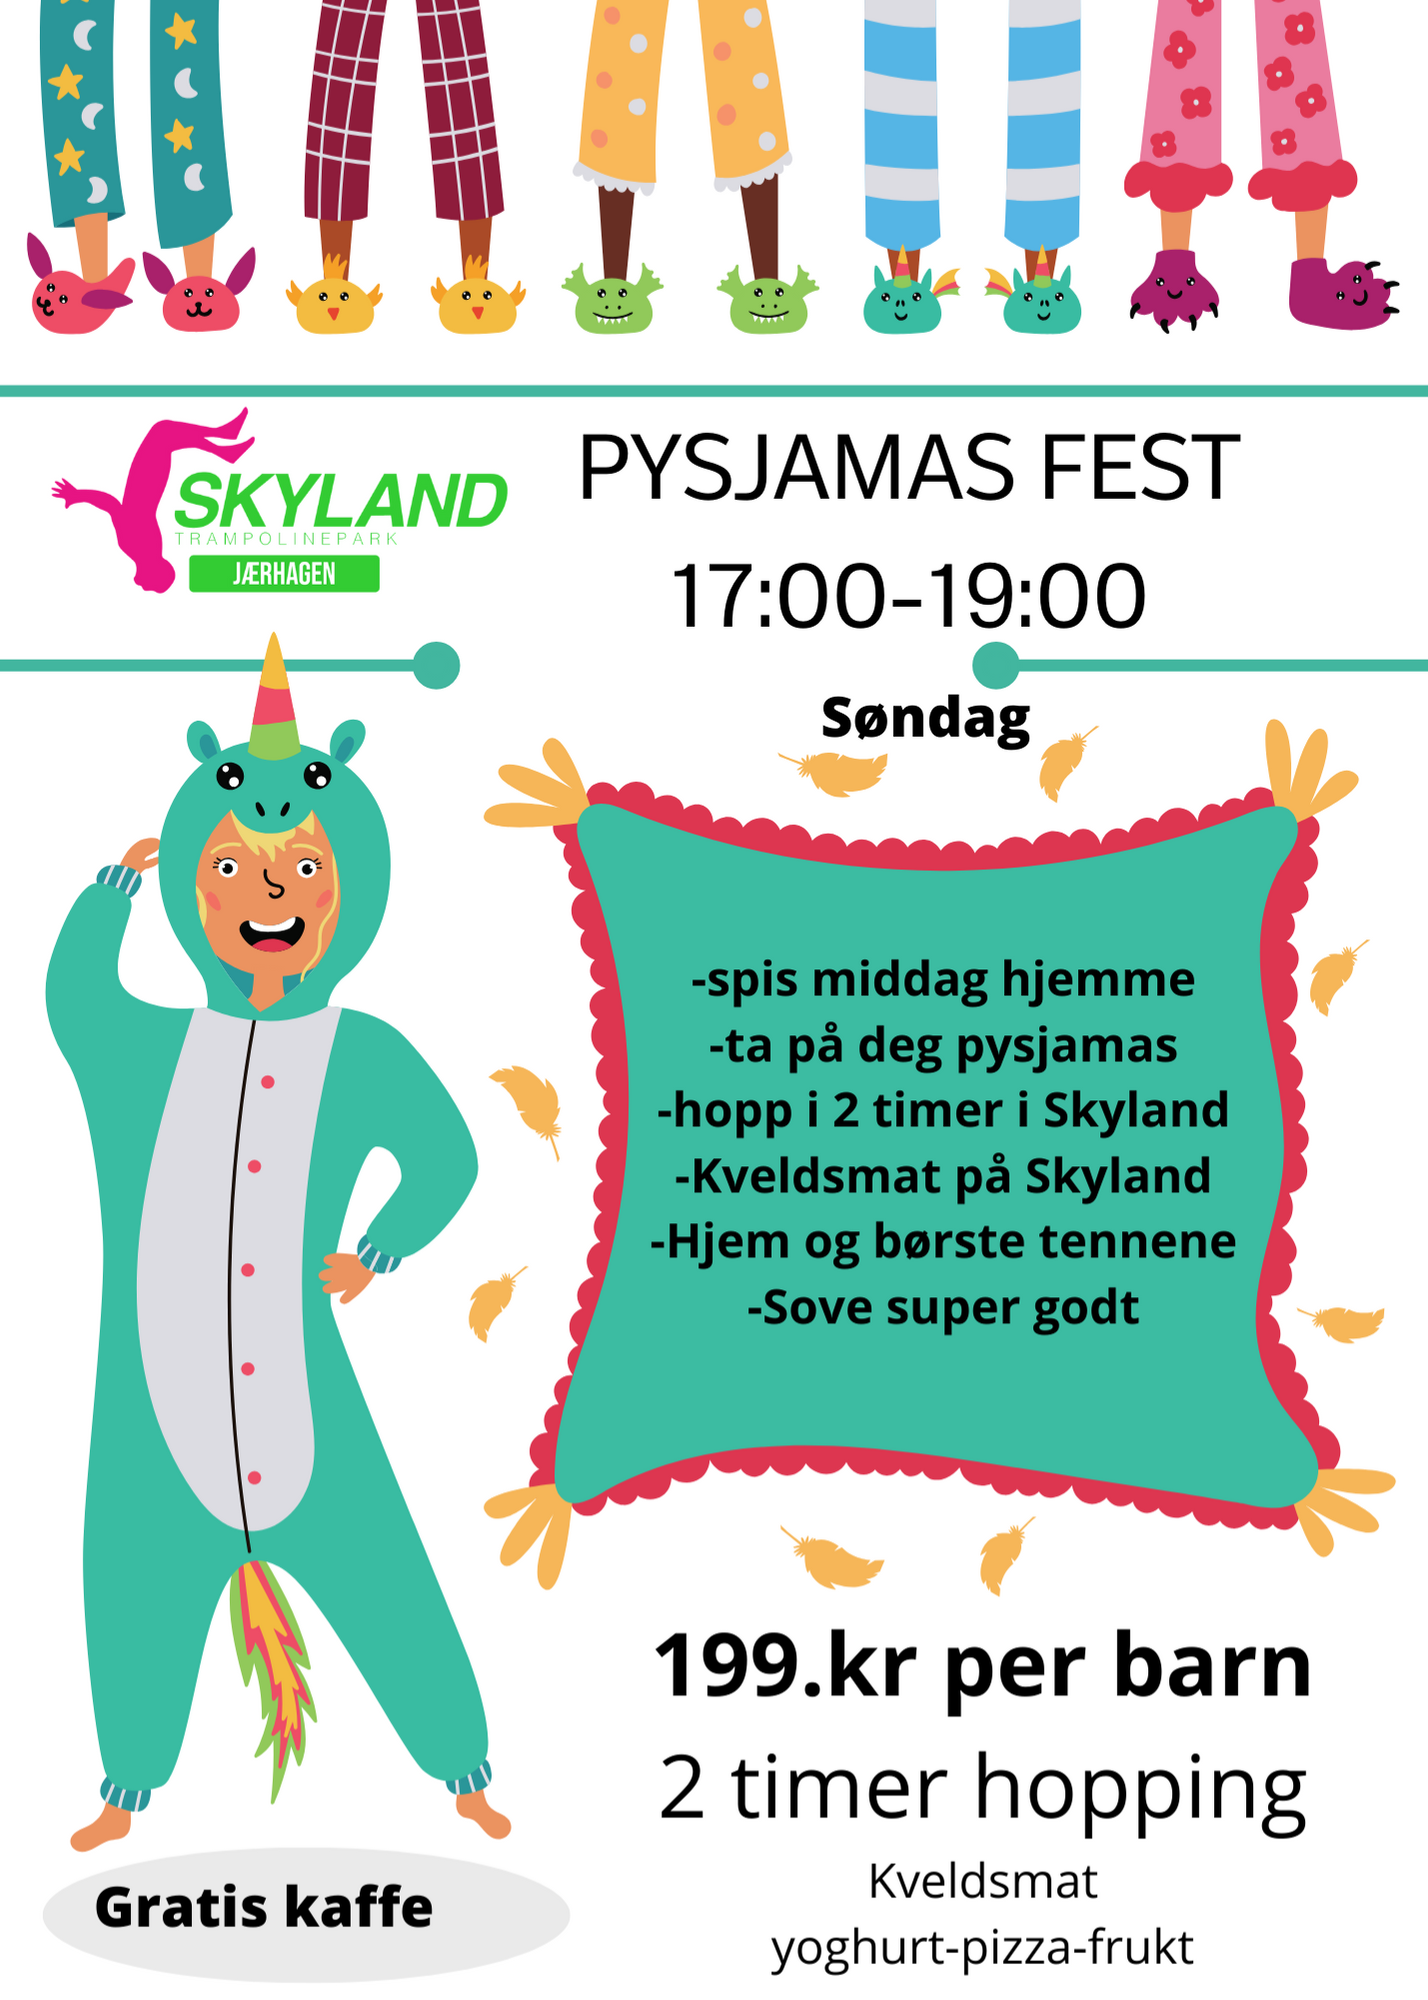 Pysjamasfest søndag 03.03